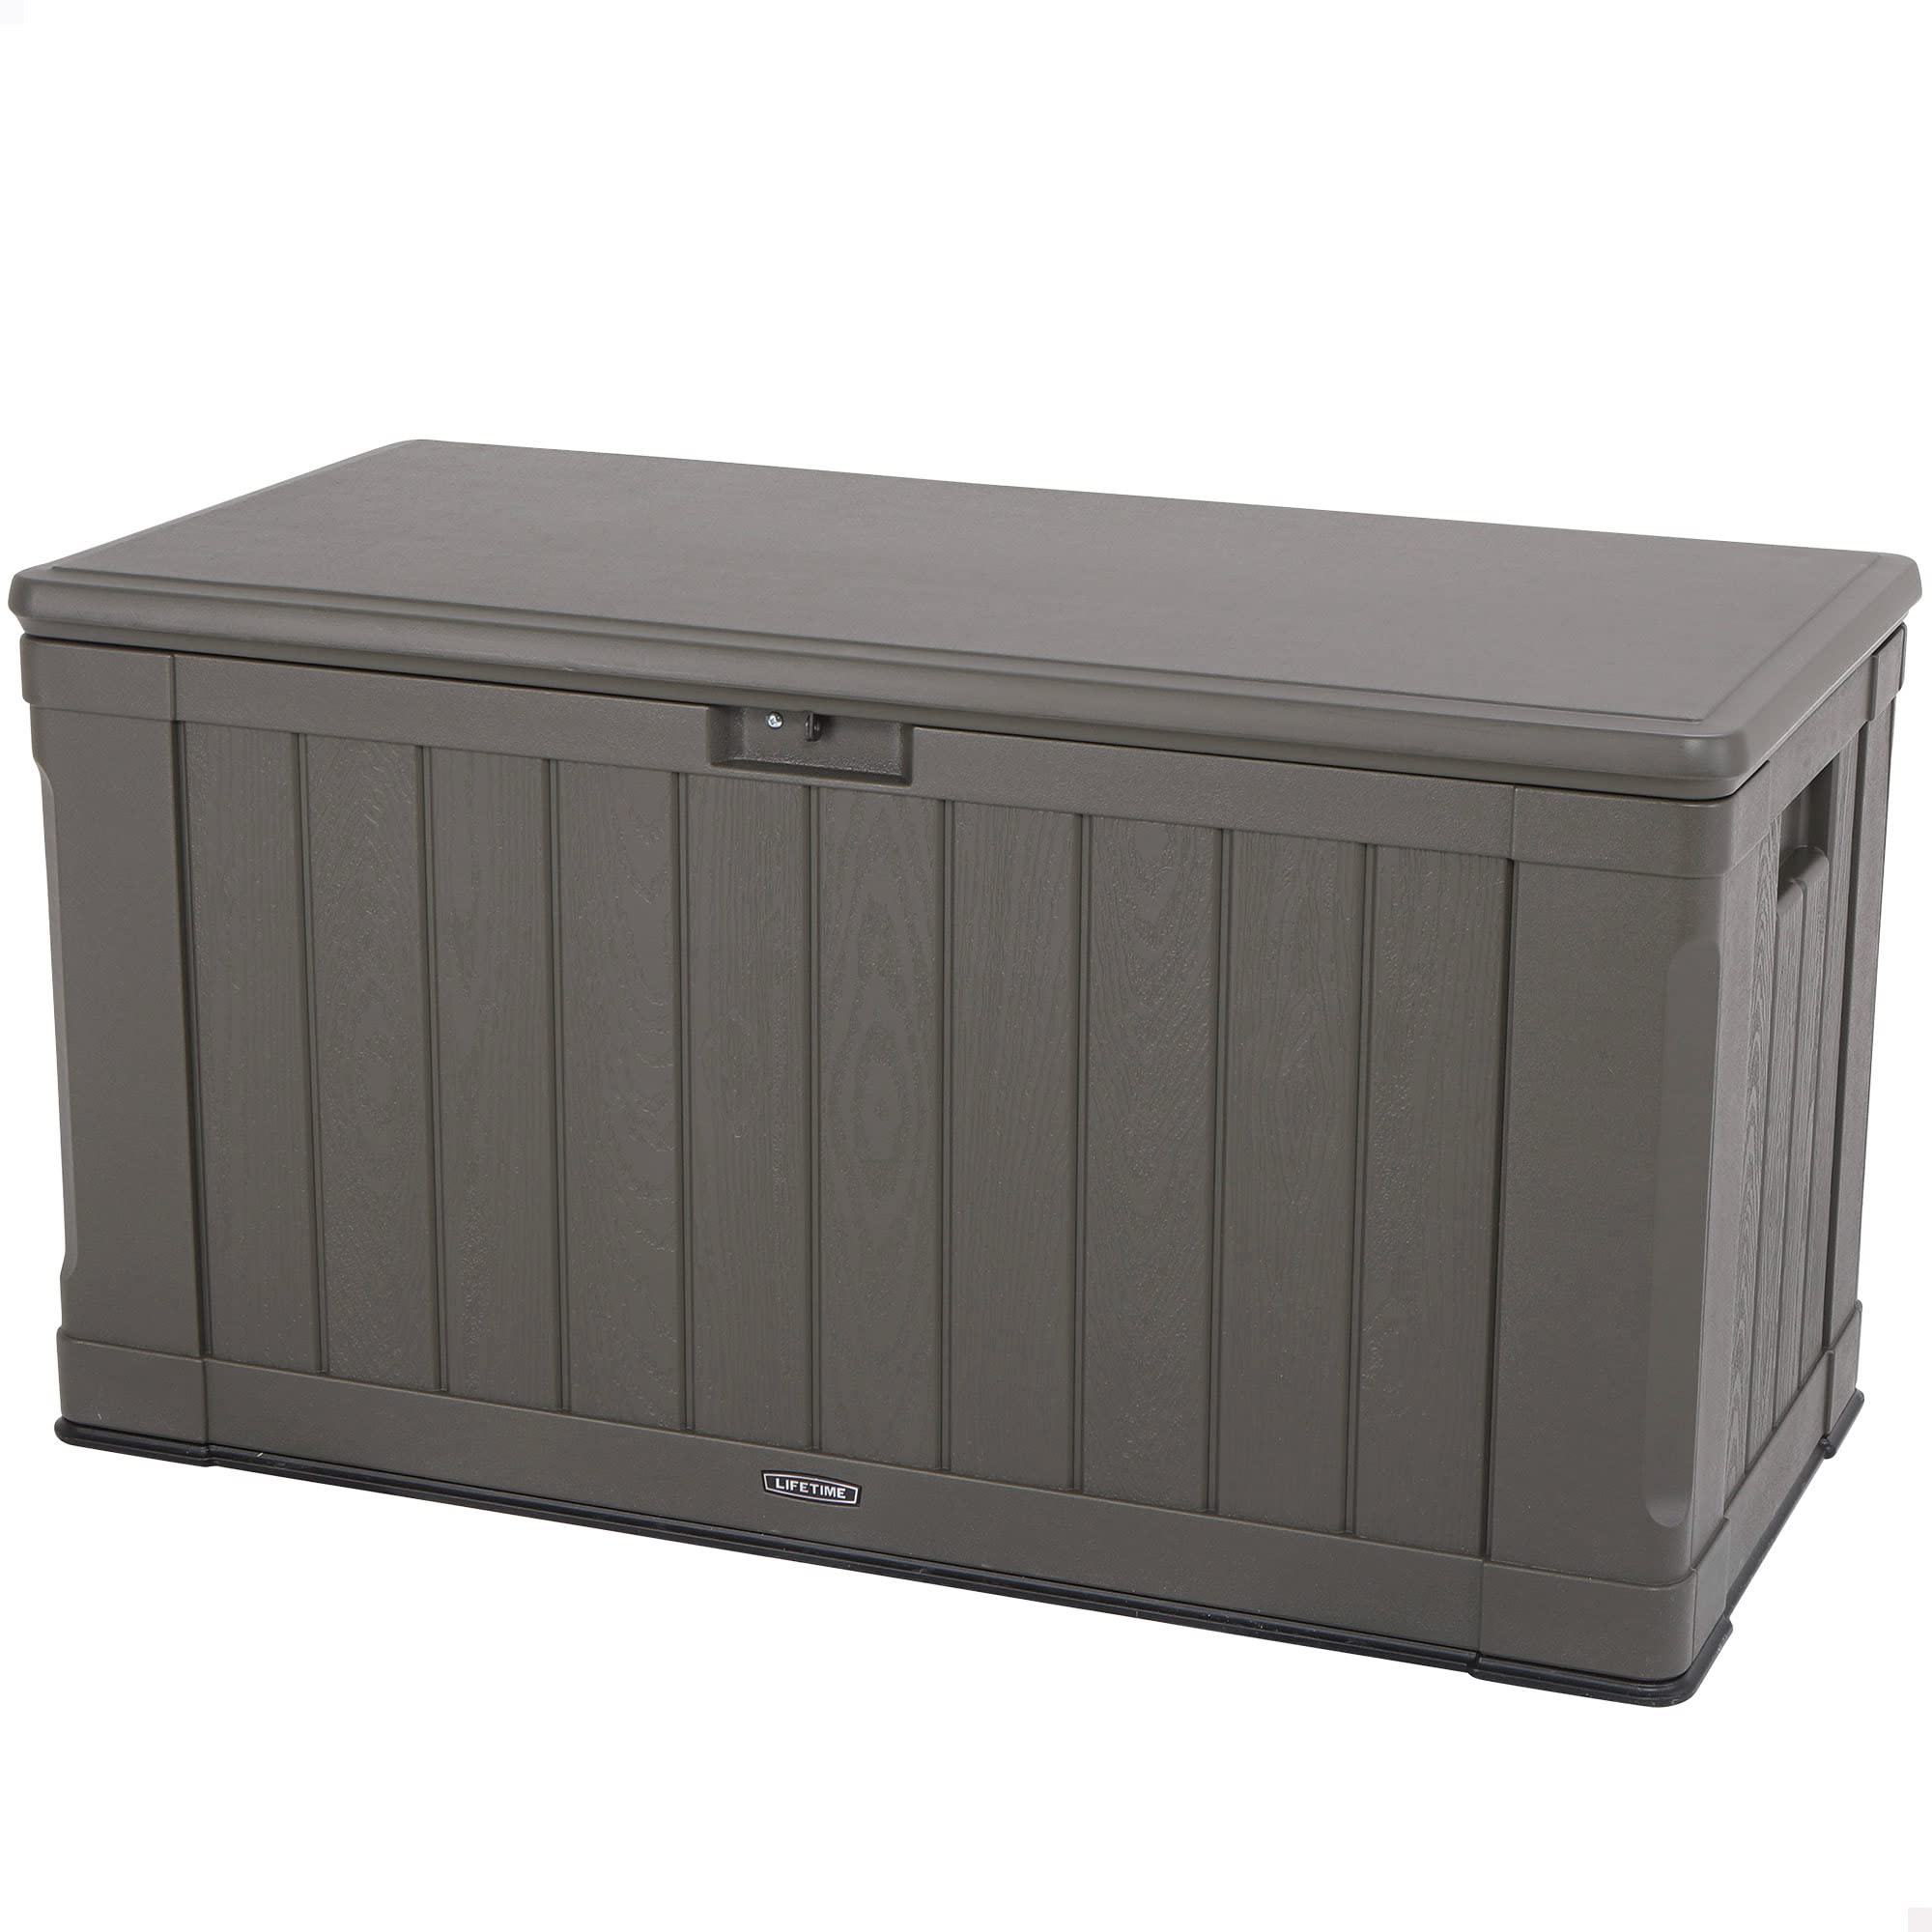 LIFETIME Auflagenbox & Kissenbox 440 Liter Fassungsvermögen | 64x128x67 cm Braun Kunststoff | Aufbewahrungsbox für Gartenutensilien